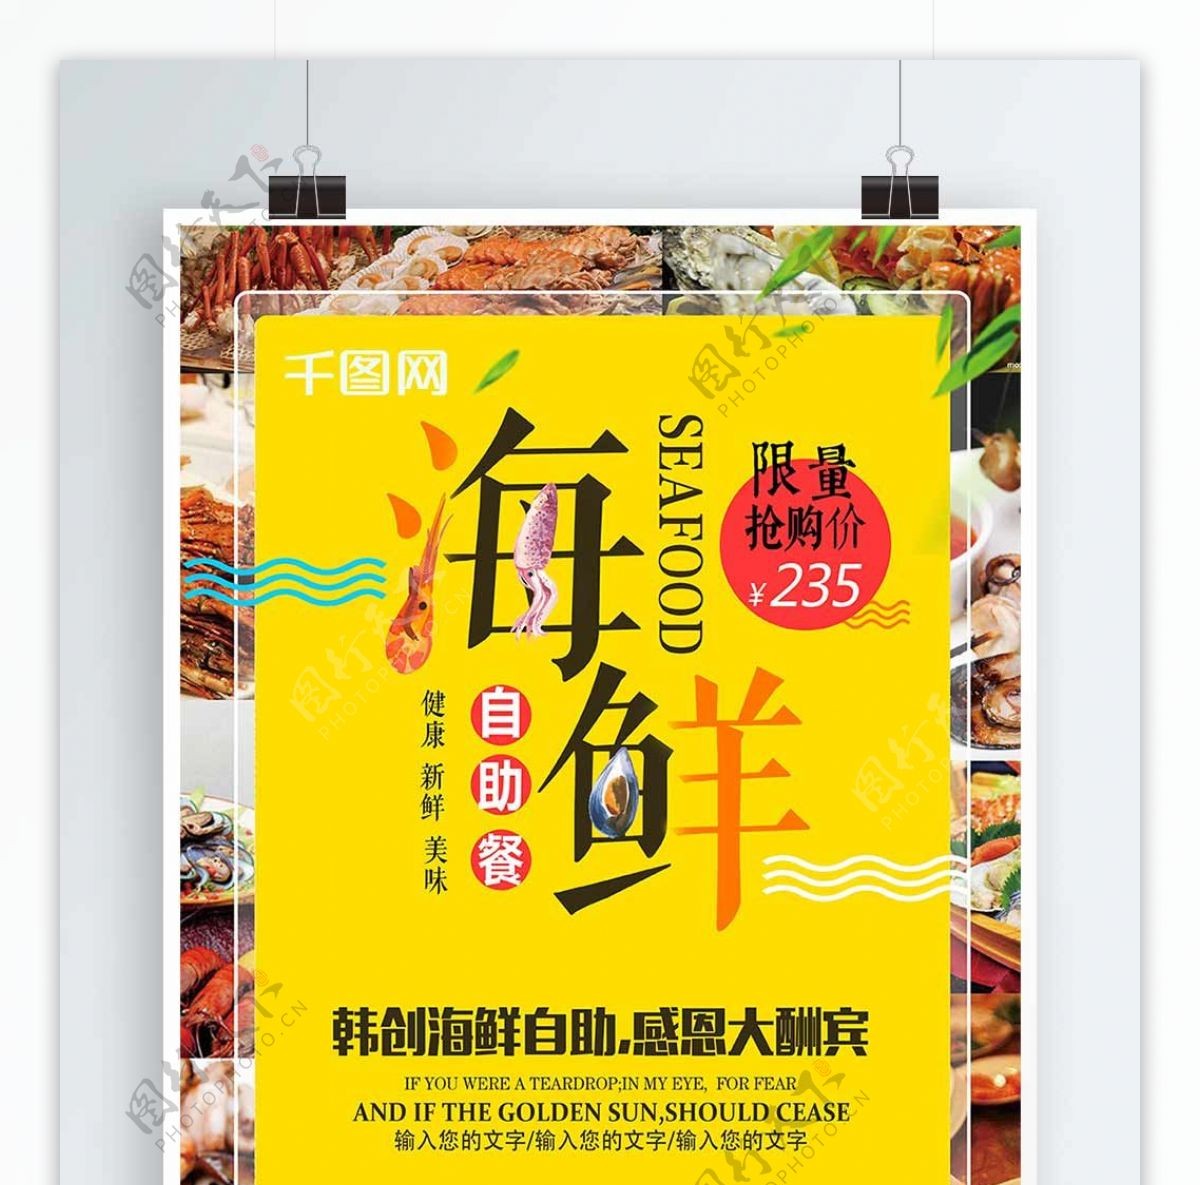 创意海鲜自助餐美食海报设计